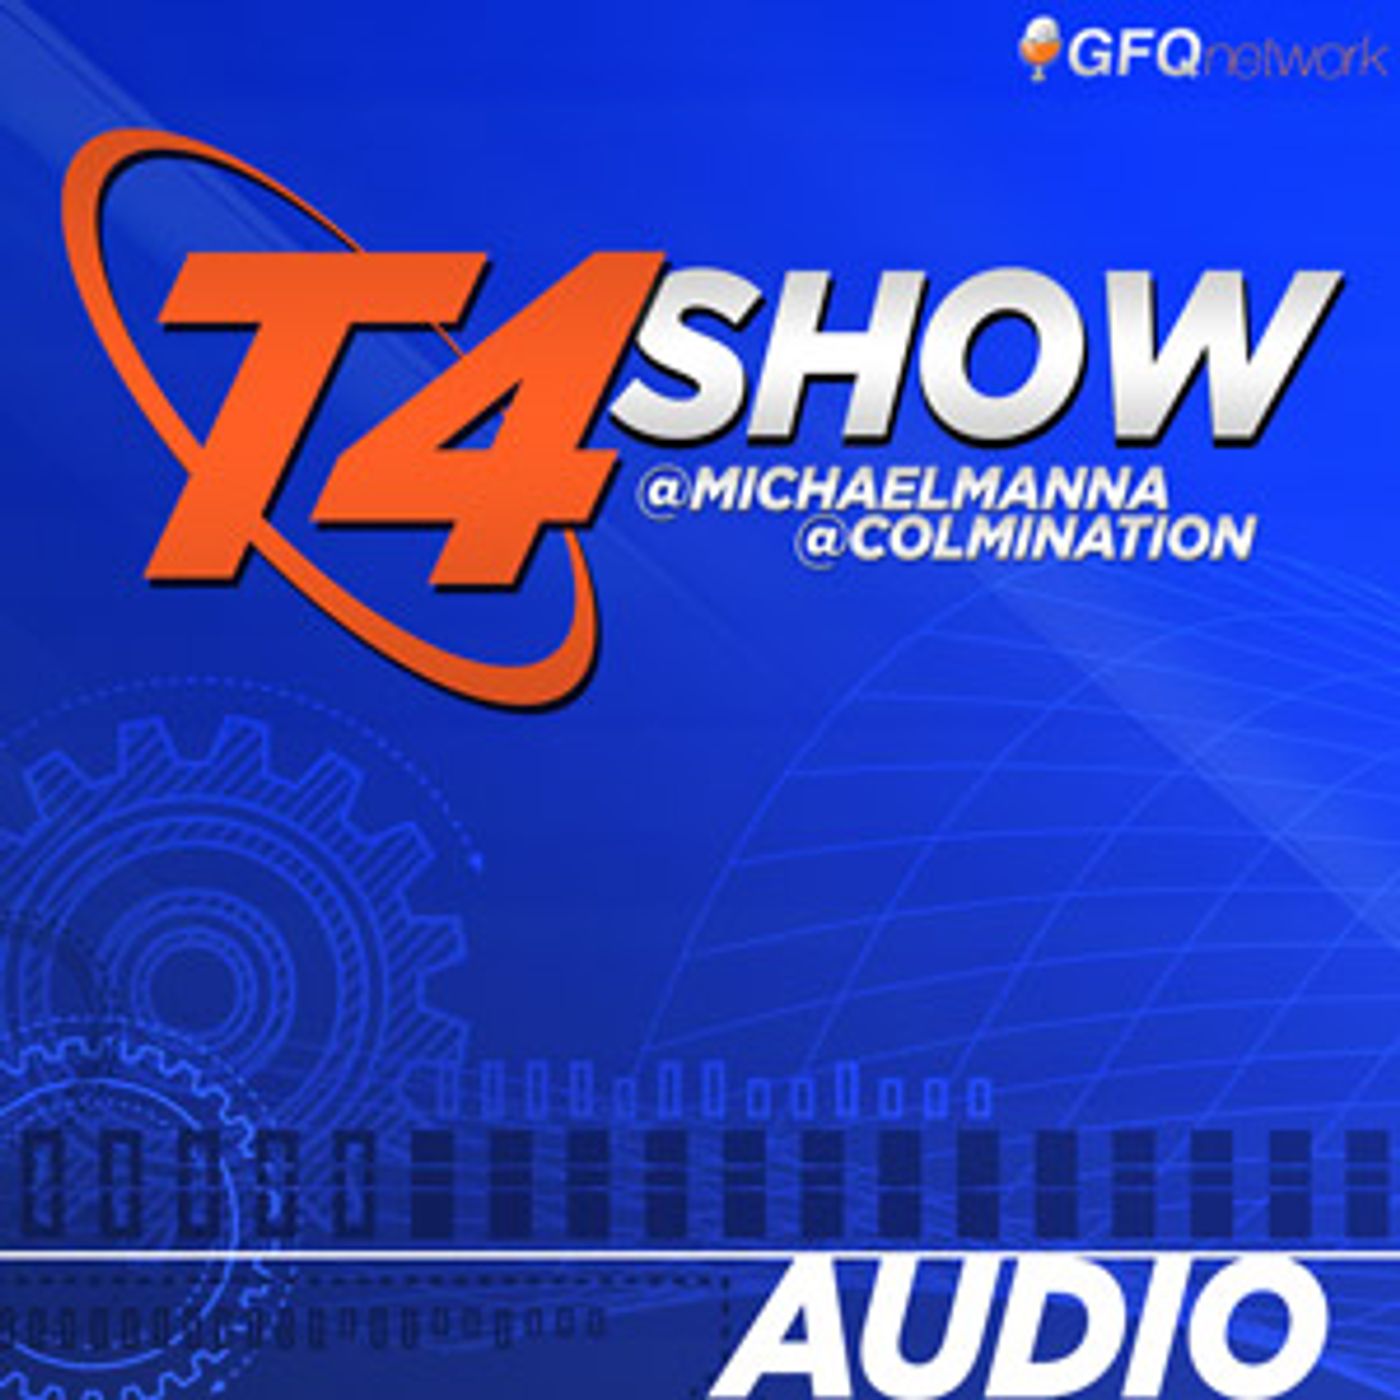 T4 Show - Tech Today Tech Tomorrow:GFQ Network